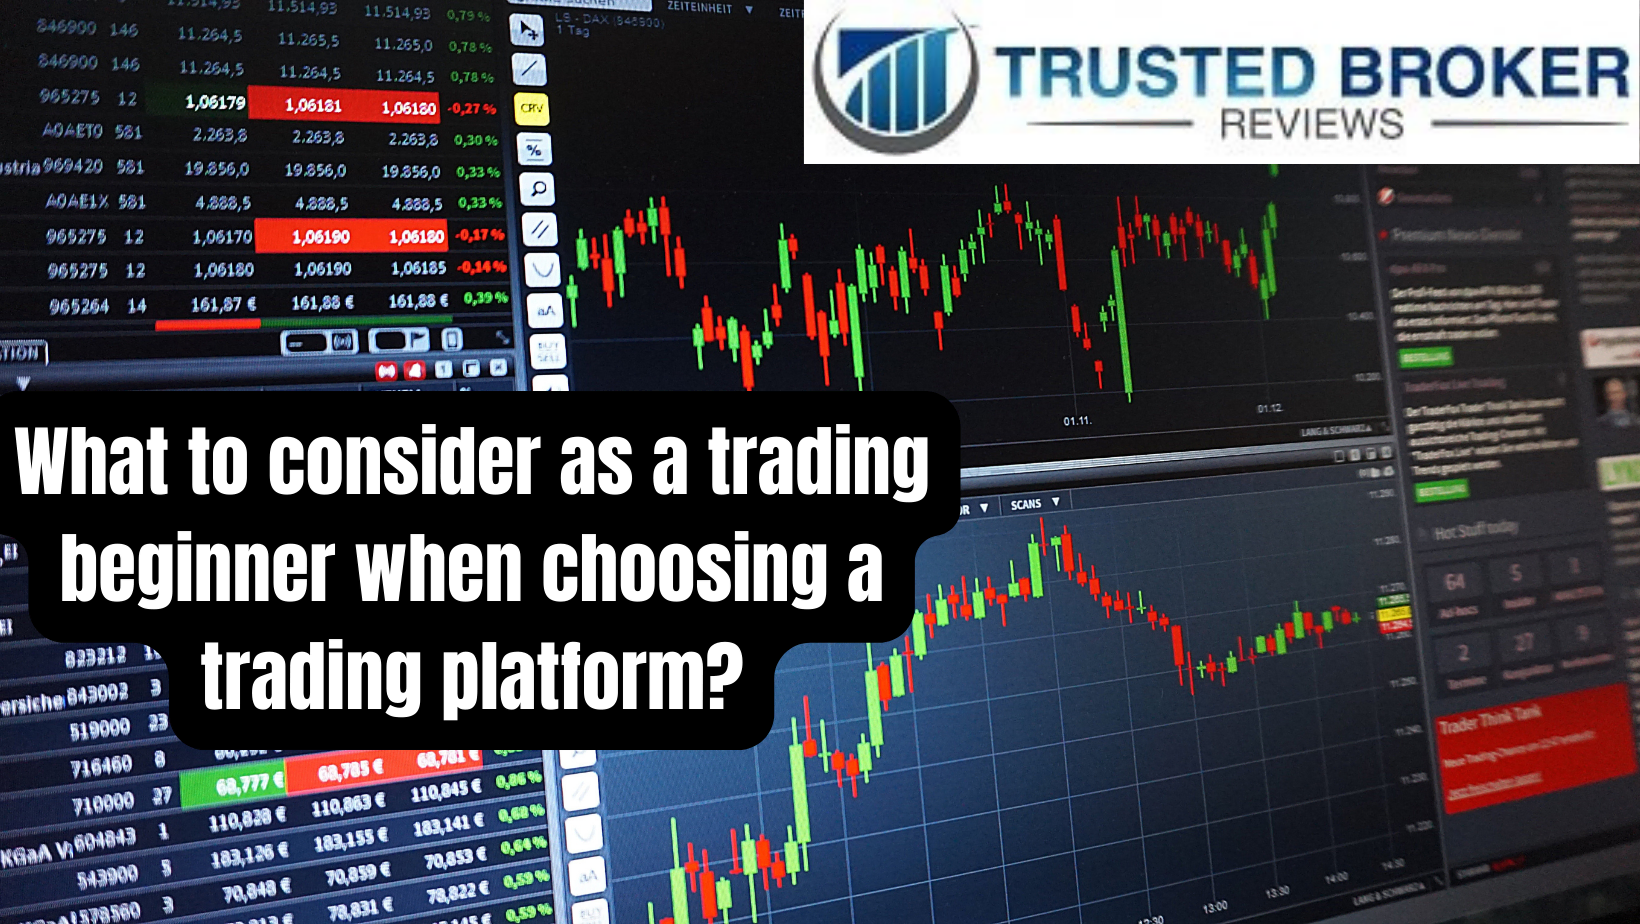 Hva bør du vurdere som en handelsbegynner når du velger en handelsplattform?